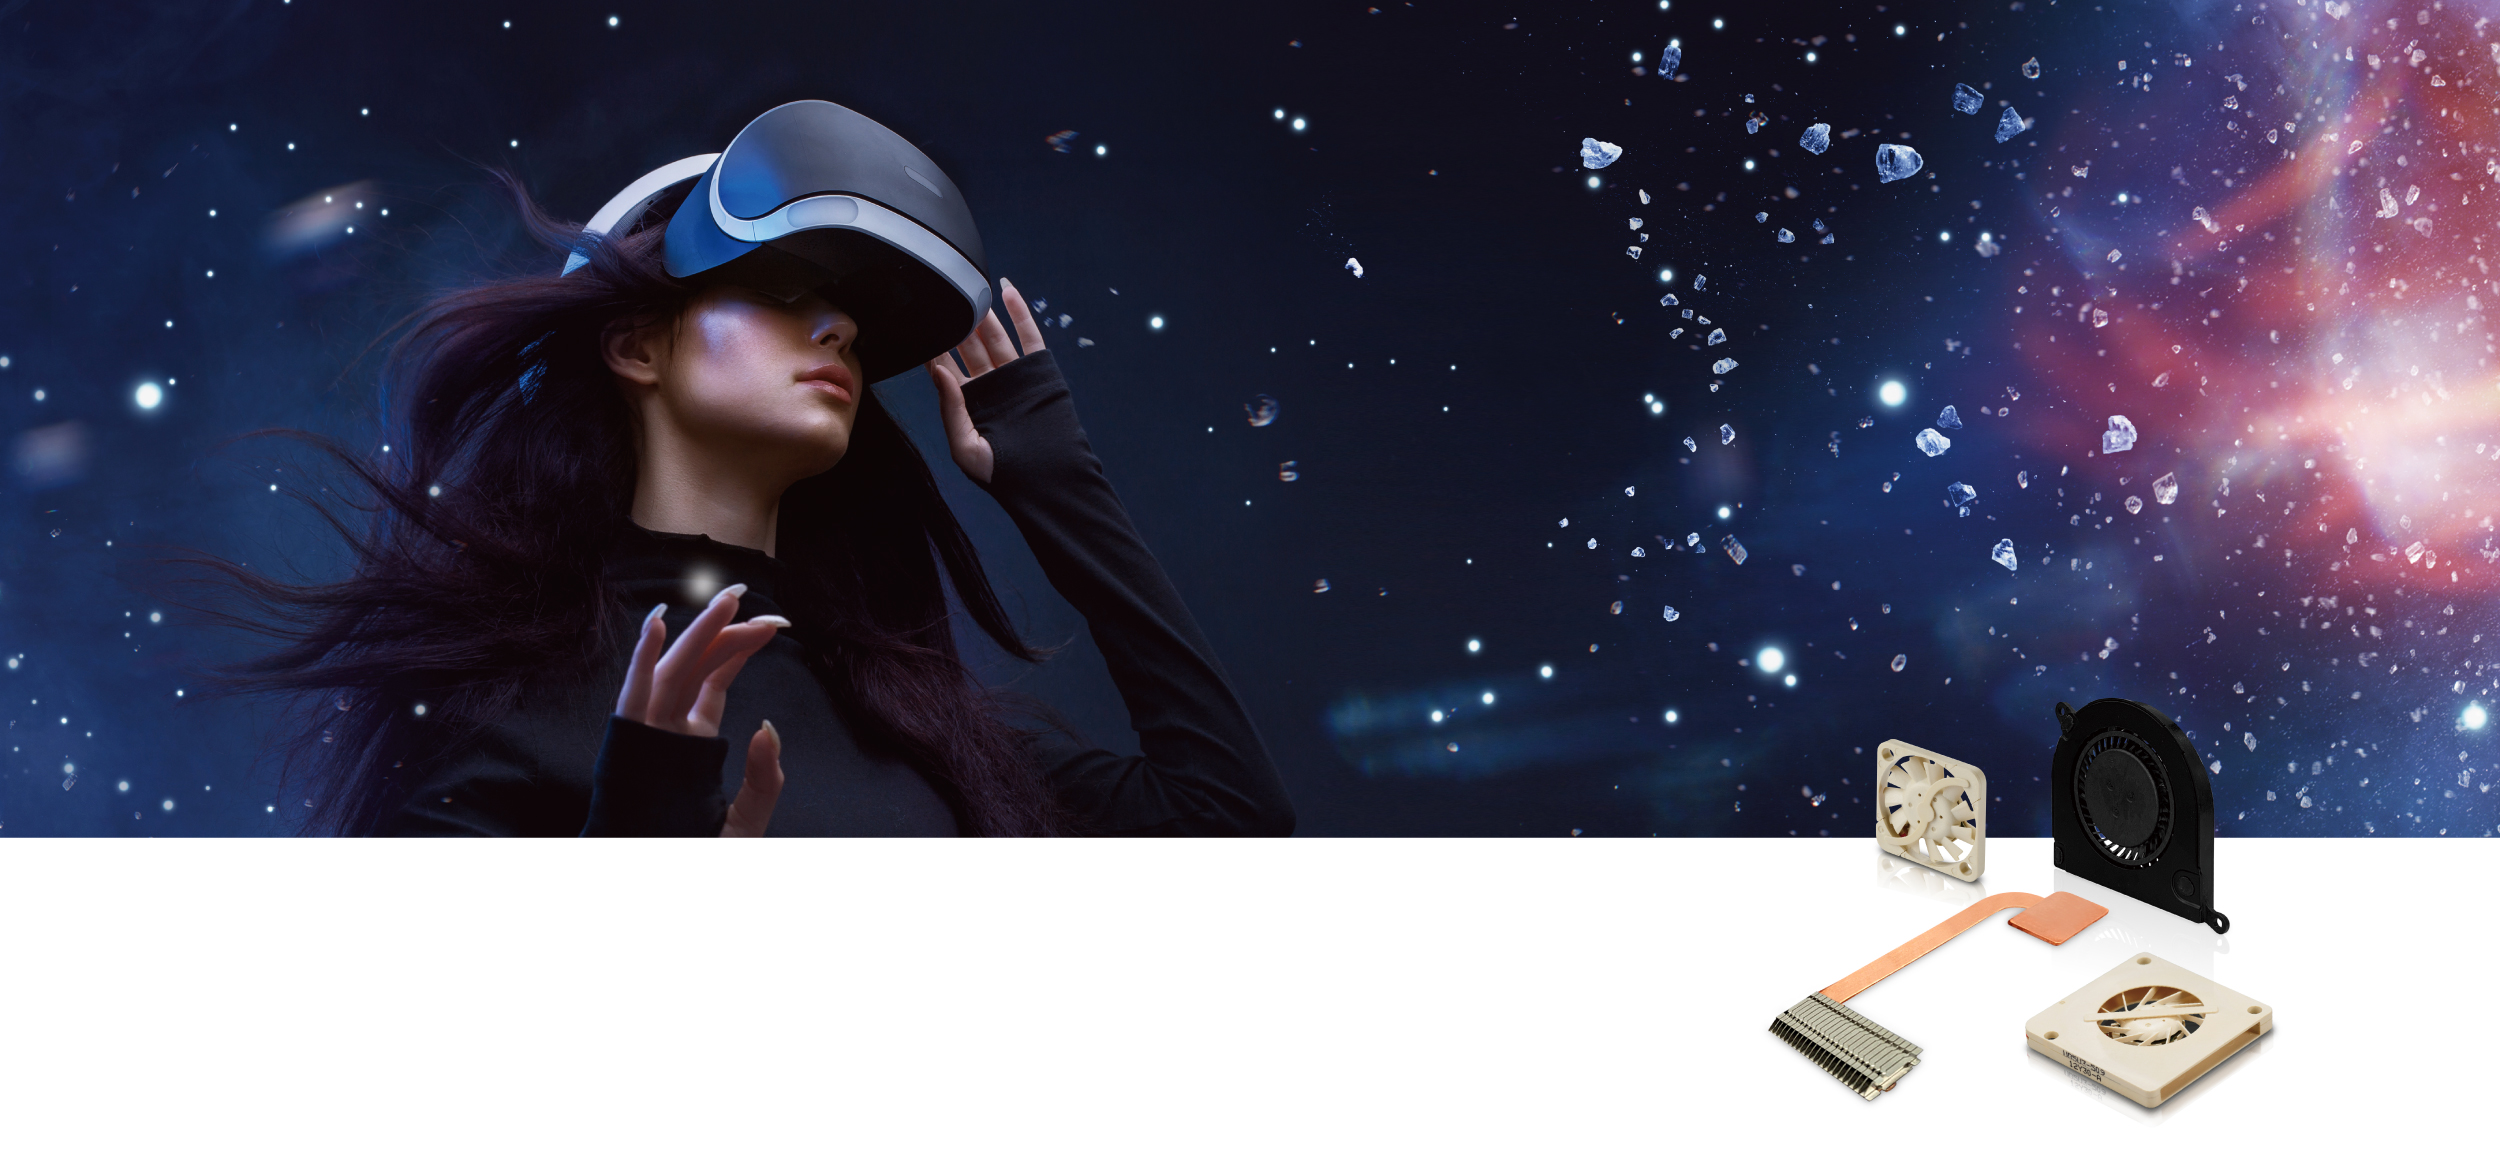 图片展示一位女性戴着虚拟现实头盔，背景是星空和飘浮的水滴，旁边有VR设备和配件。